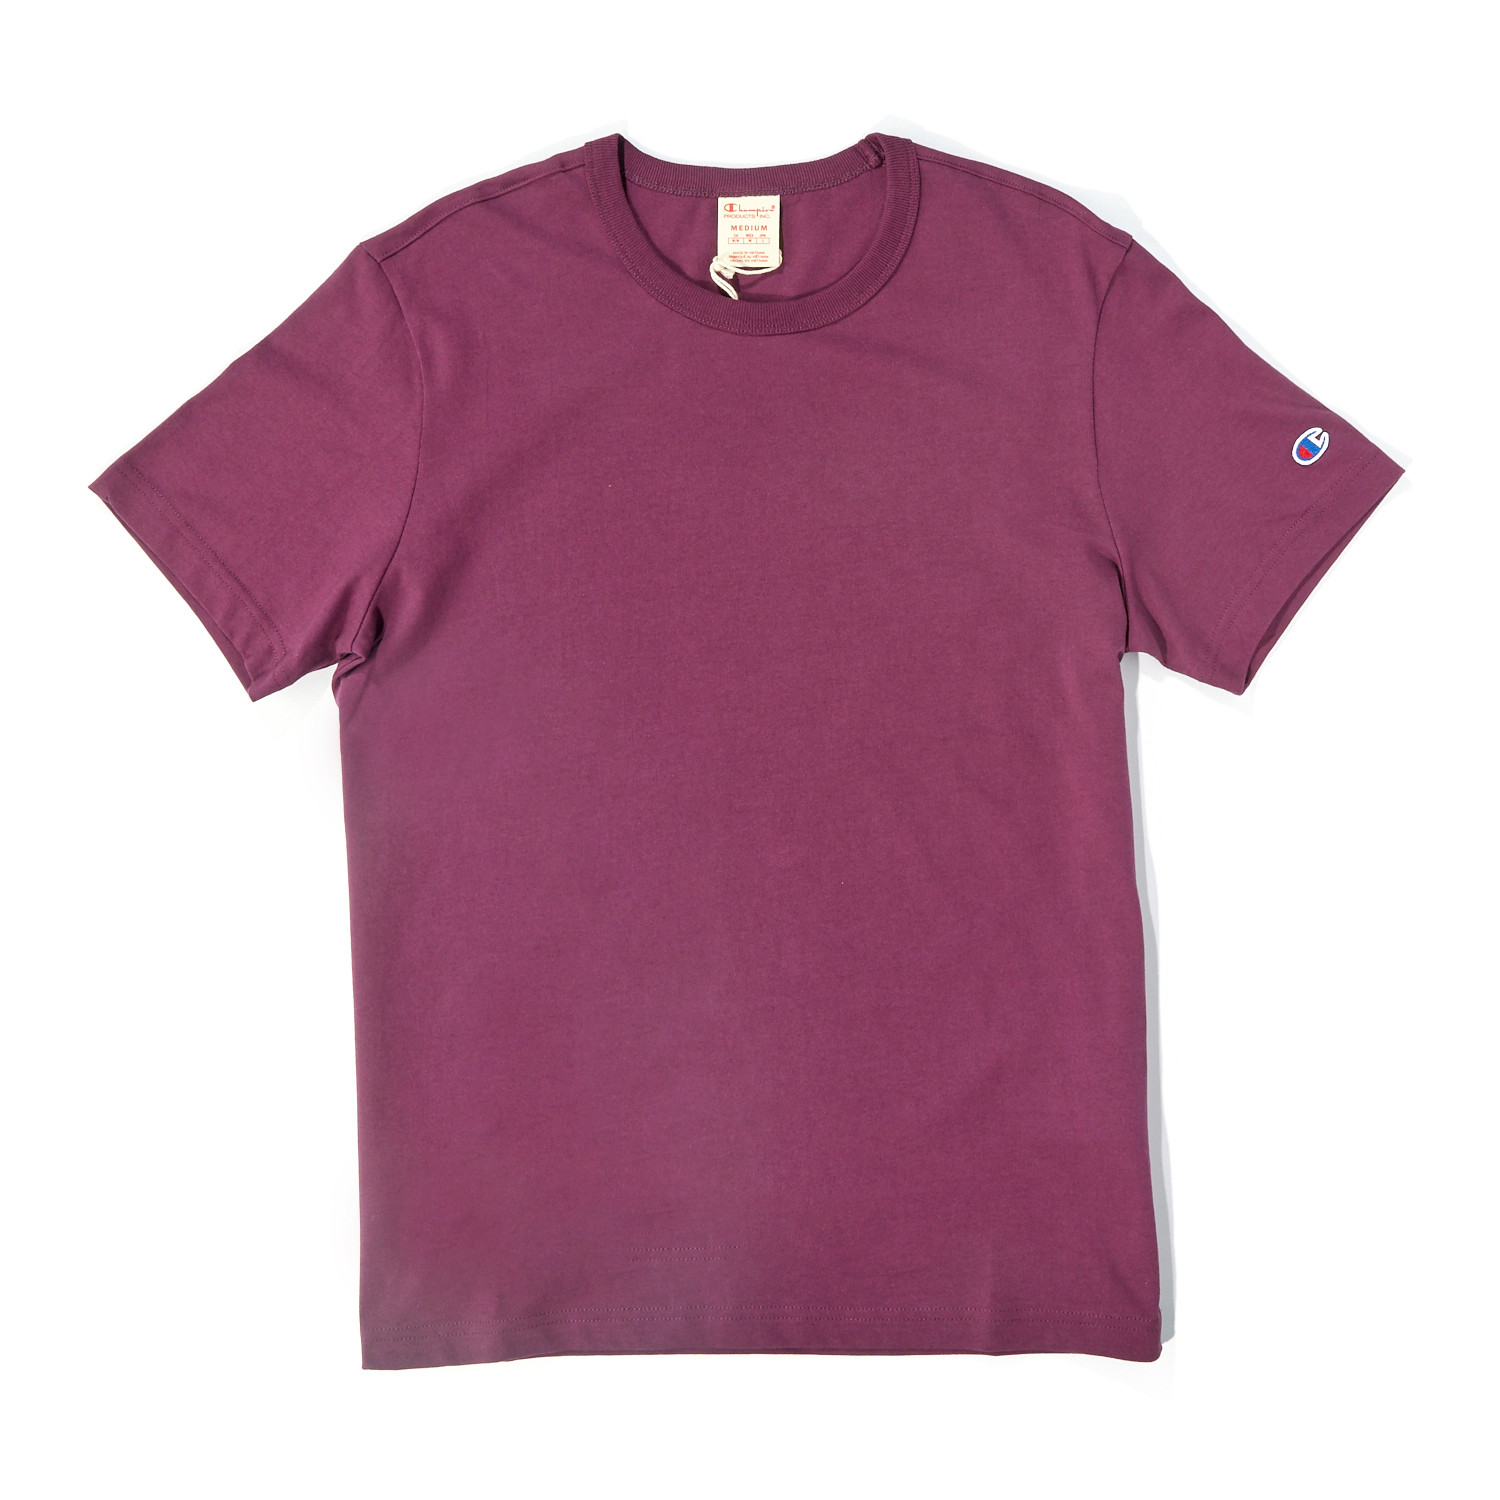 Little C T-Shirt // Cranberry Mauve (XS) - Hanes PERMANENT STORE ...